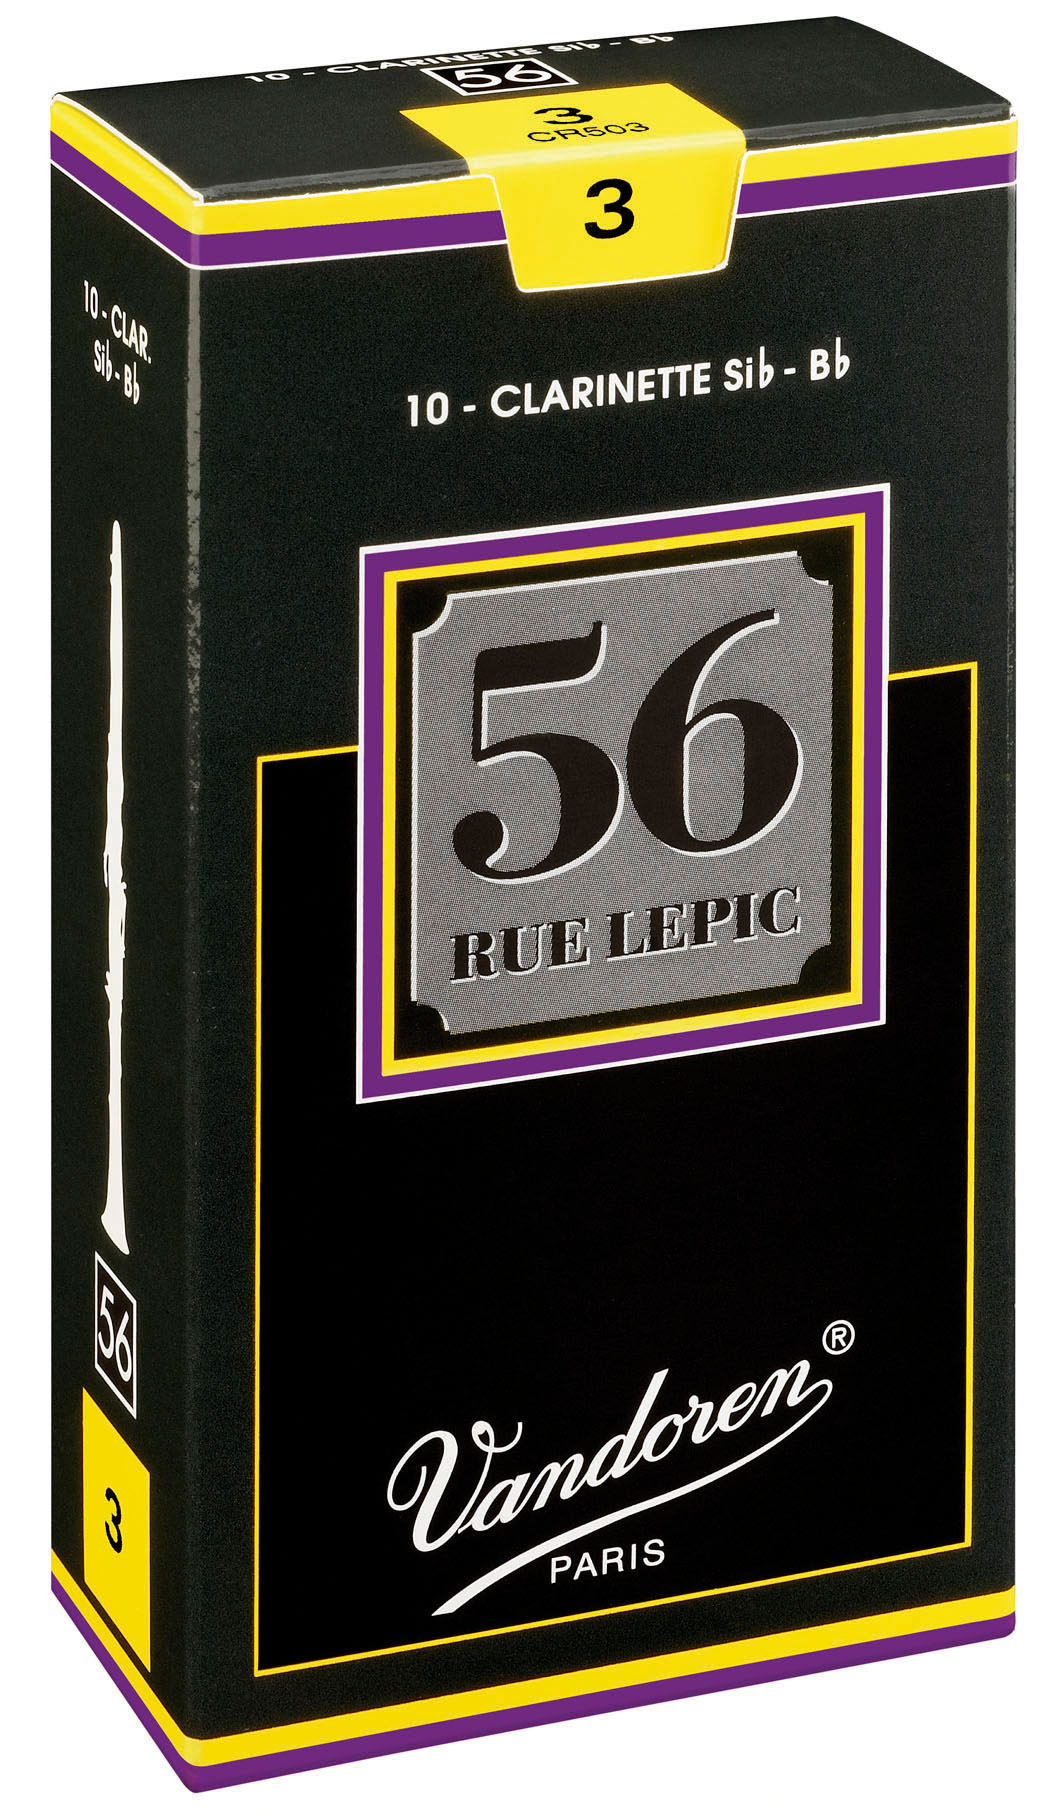 Bb-Klarinette 3,5 56 Rue Lepic 10er Pack